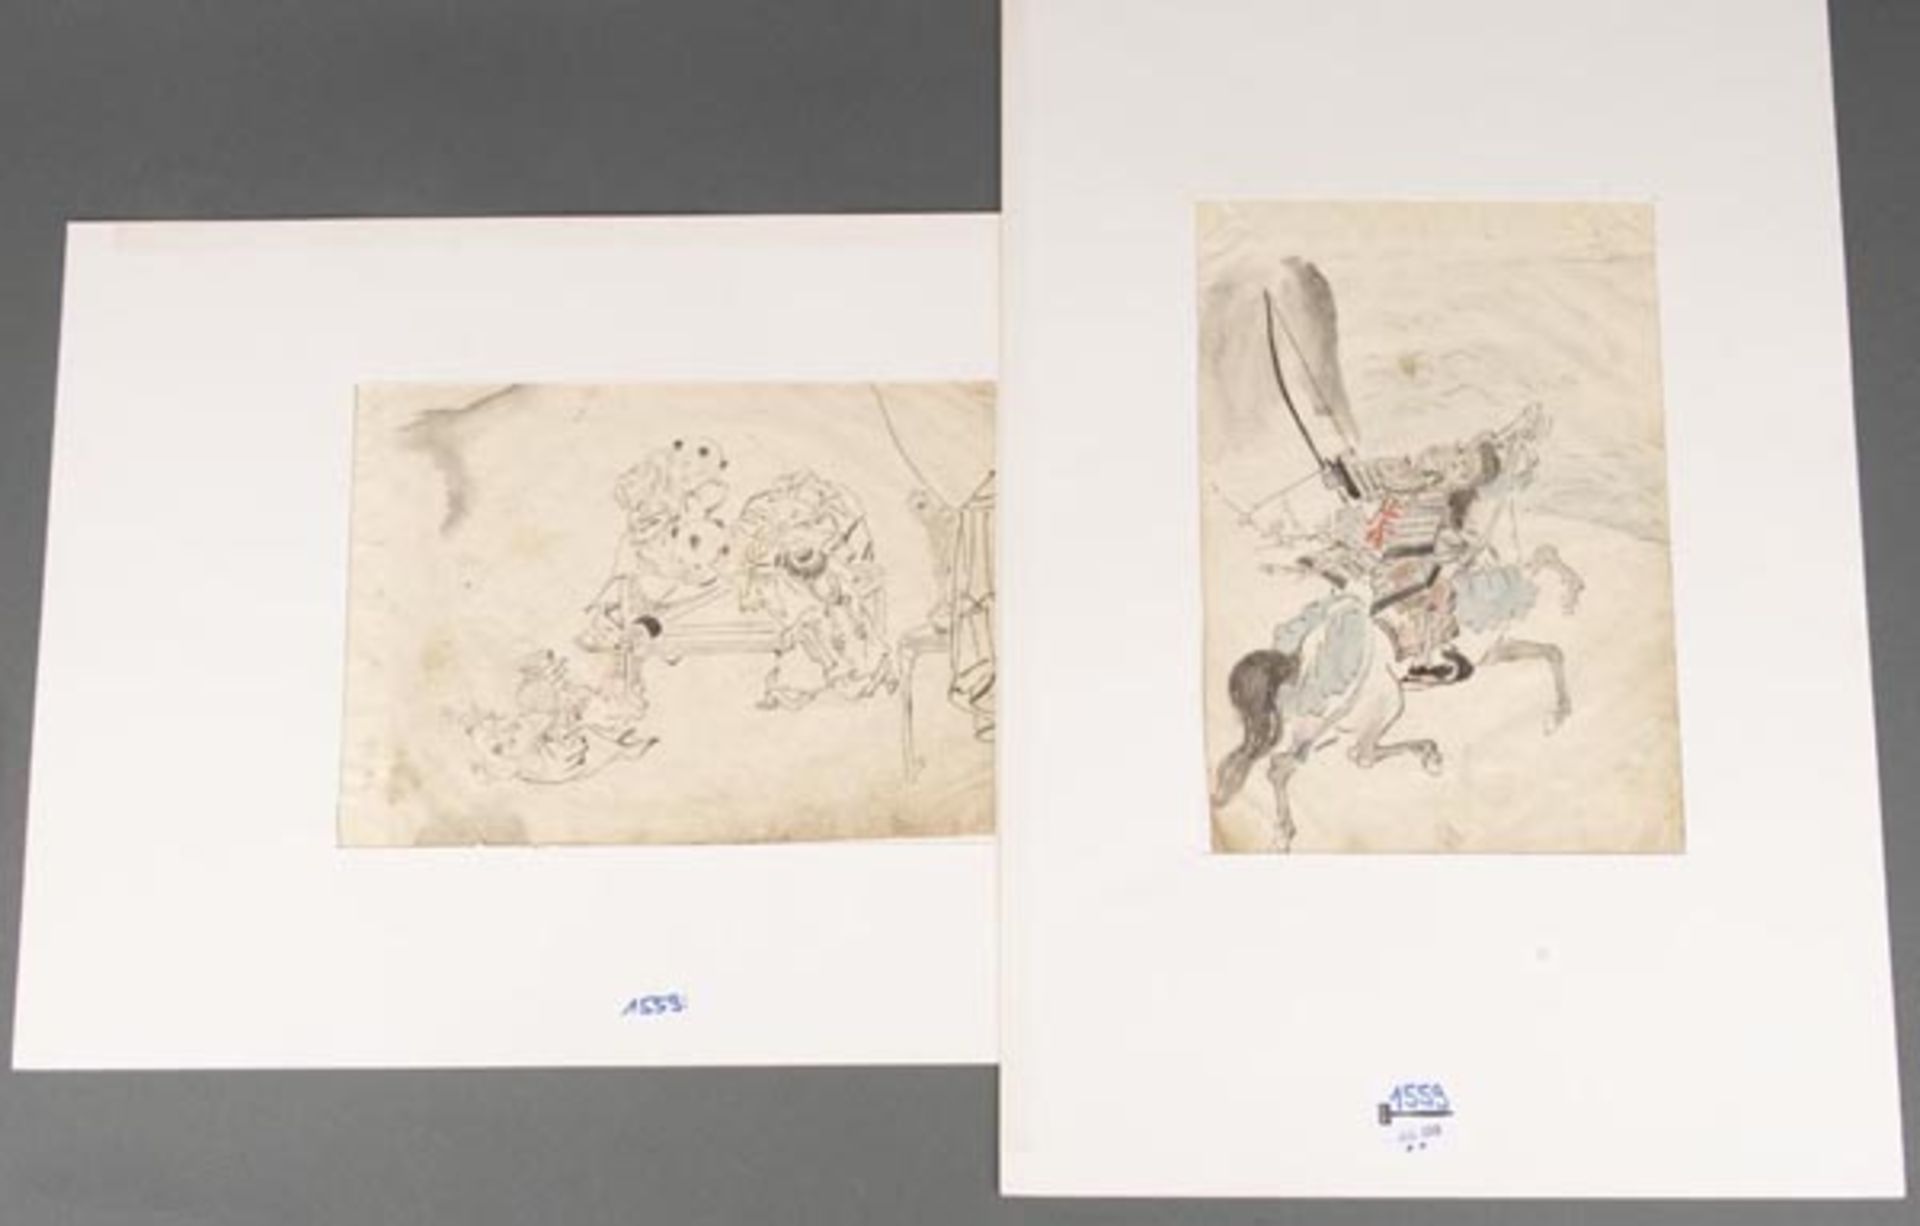 Japanischer Maler des 19. Jhs. Reiter und spielende Kinder. Tuschfeder- bzw. aquarellierte